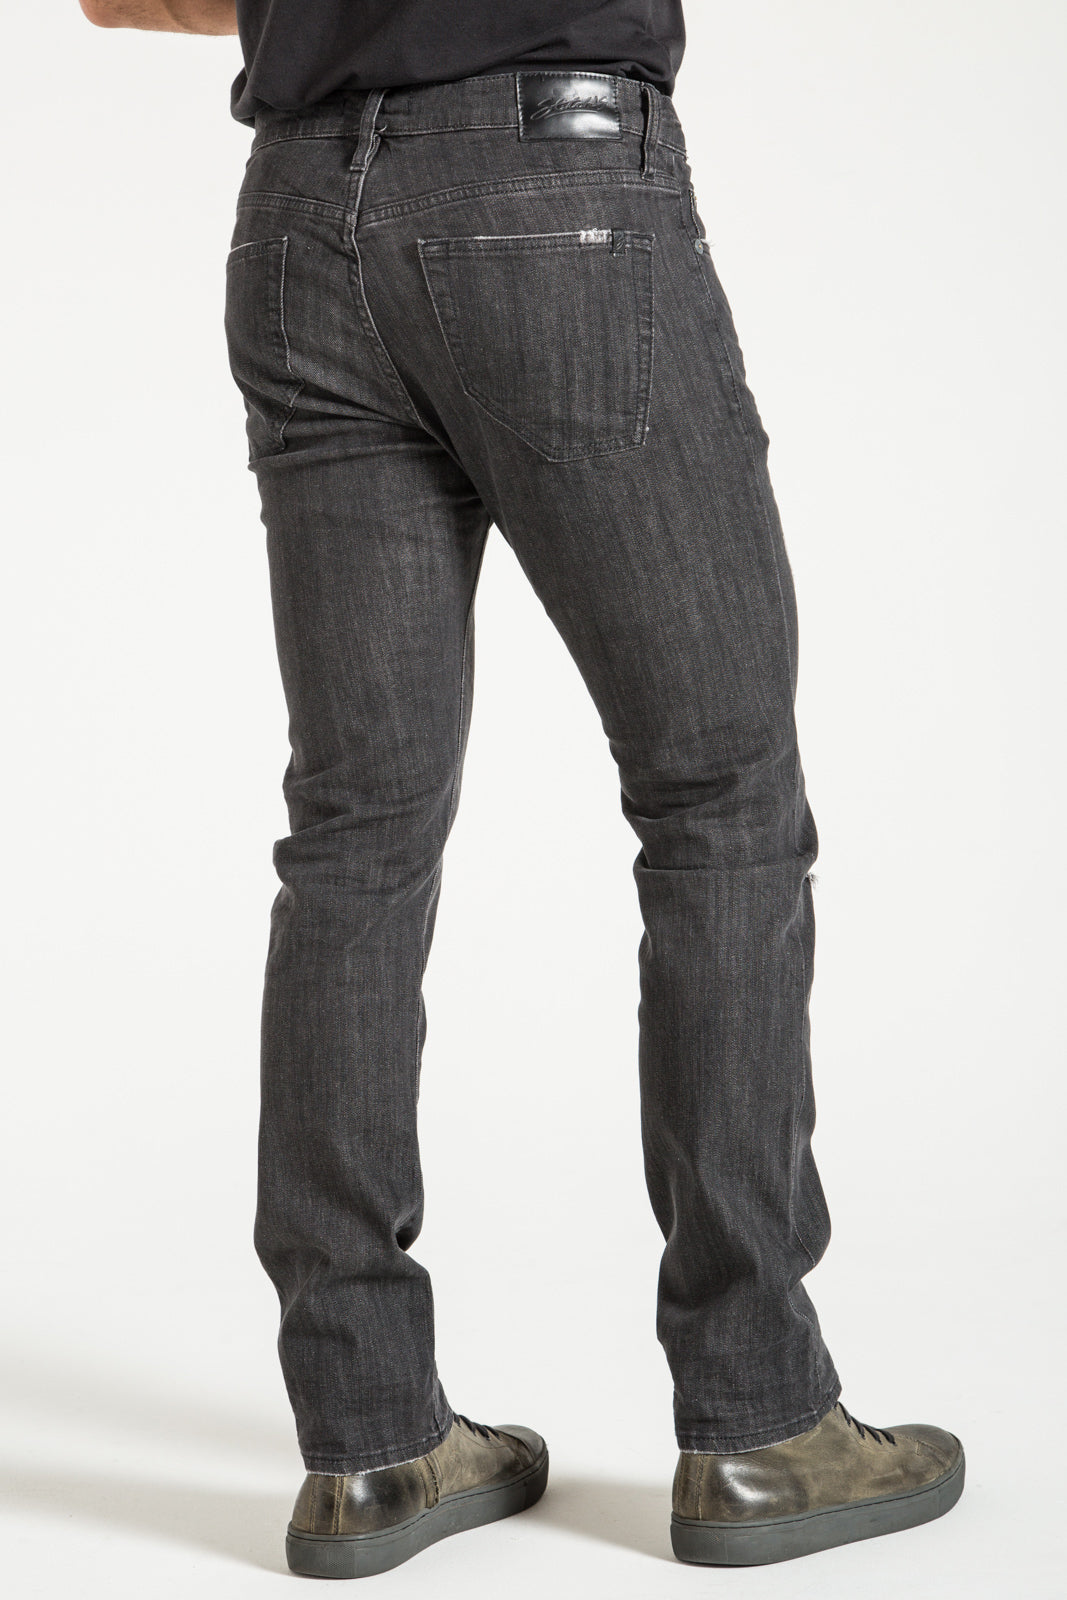 BARFLY SLIM IN HAYDEN BLACK DENIM | STITCHS JEANS – Stitch's Jeans